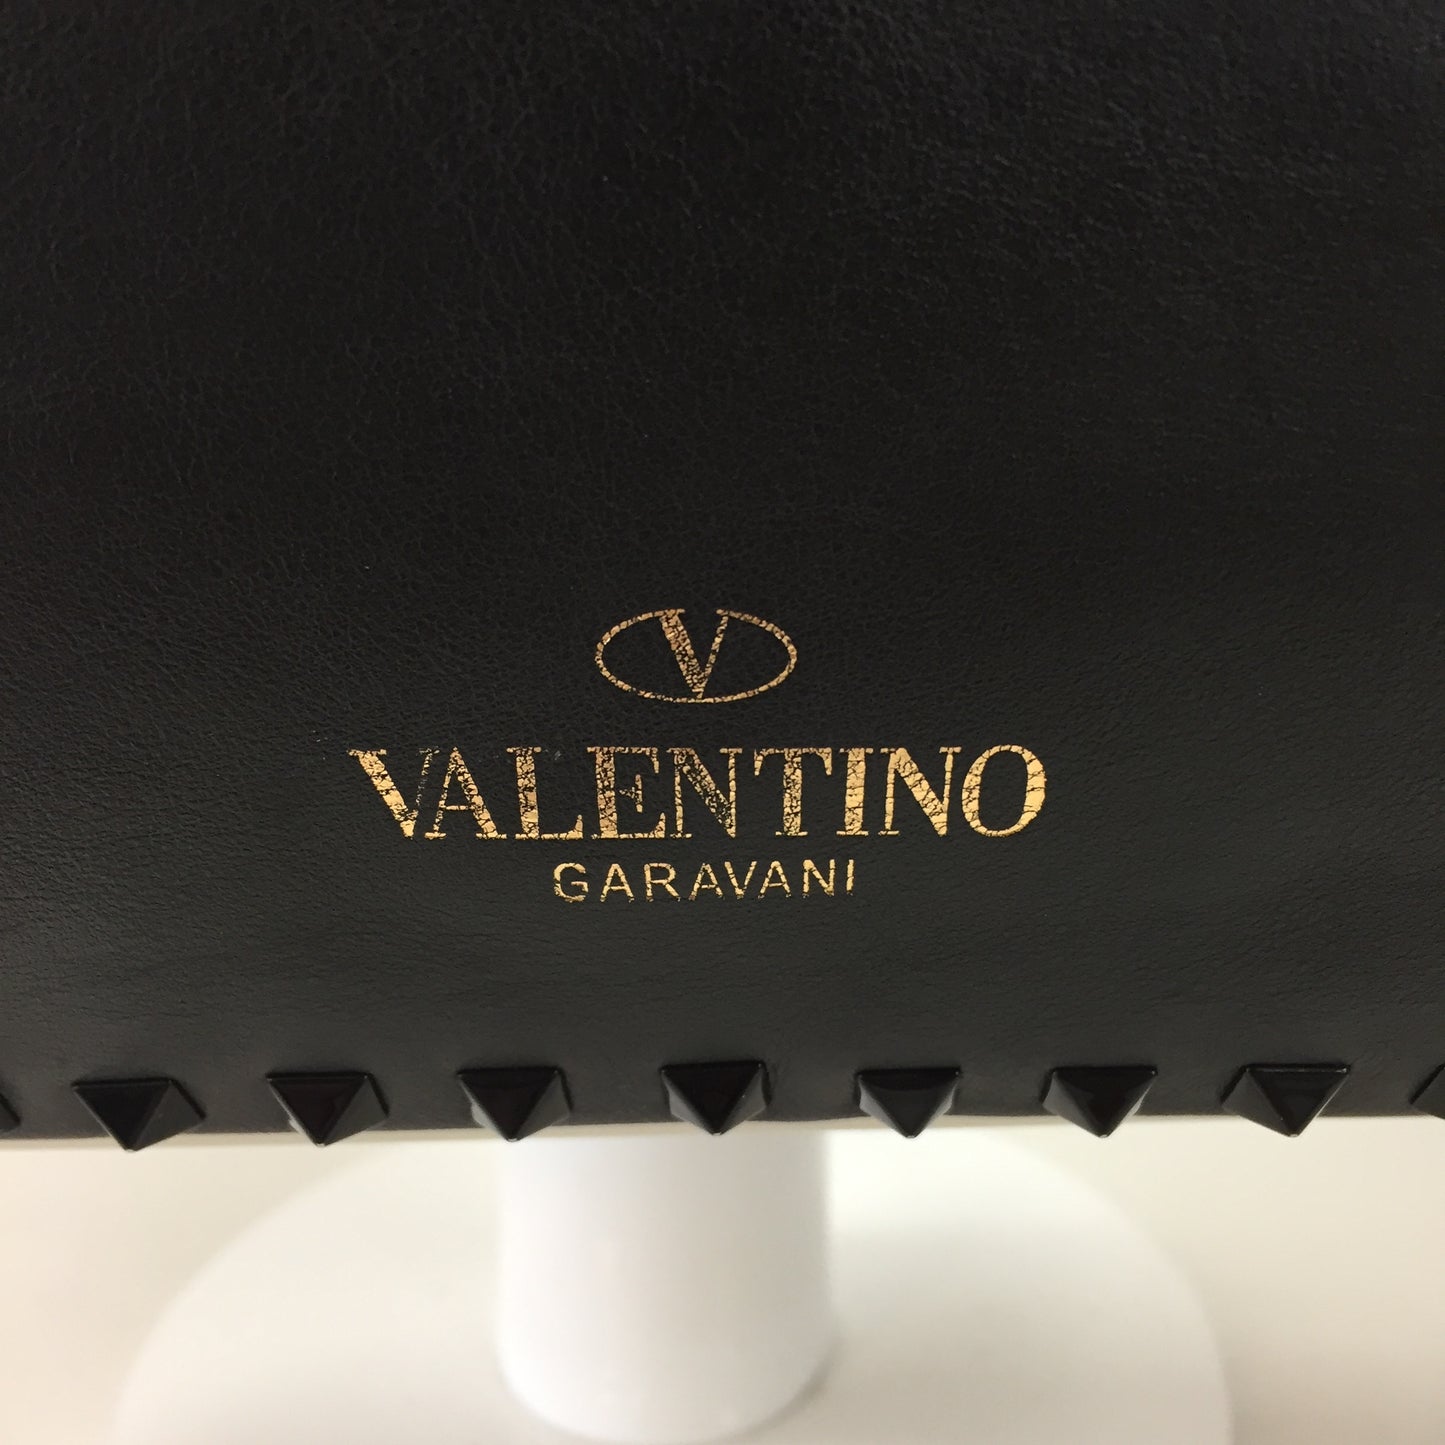 Authentic Valentino Garavani Cream And Black Rockstud Tote